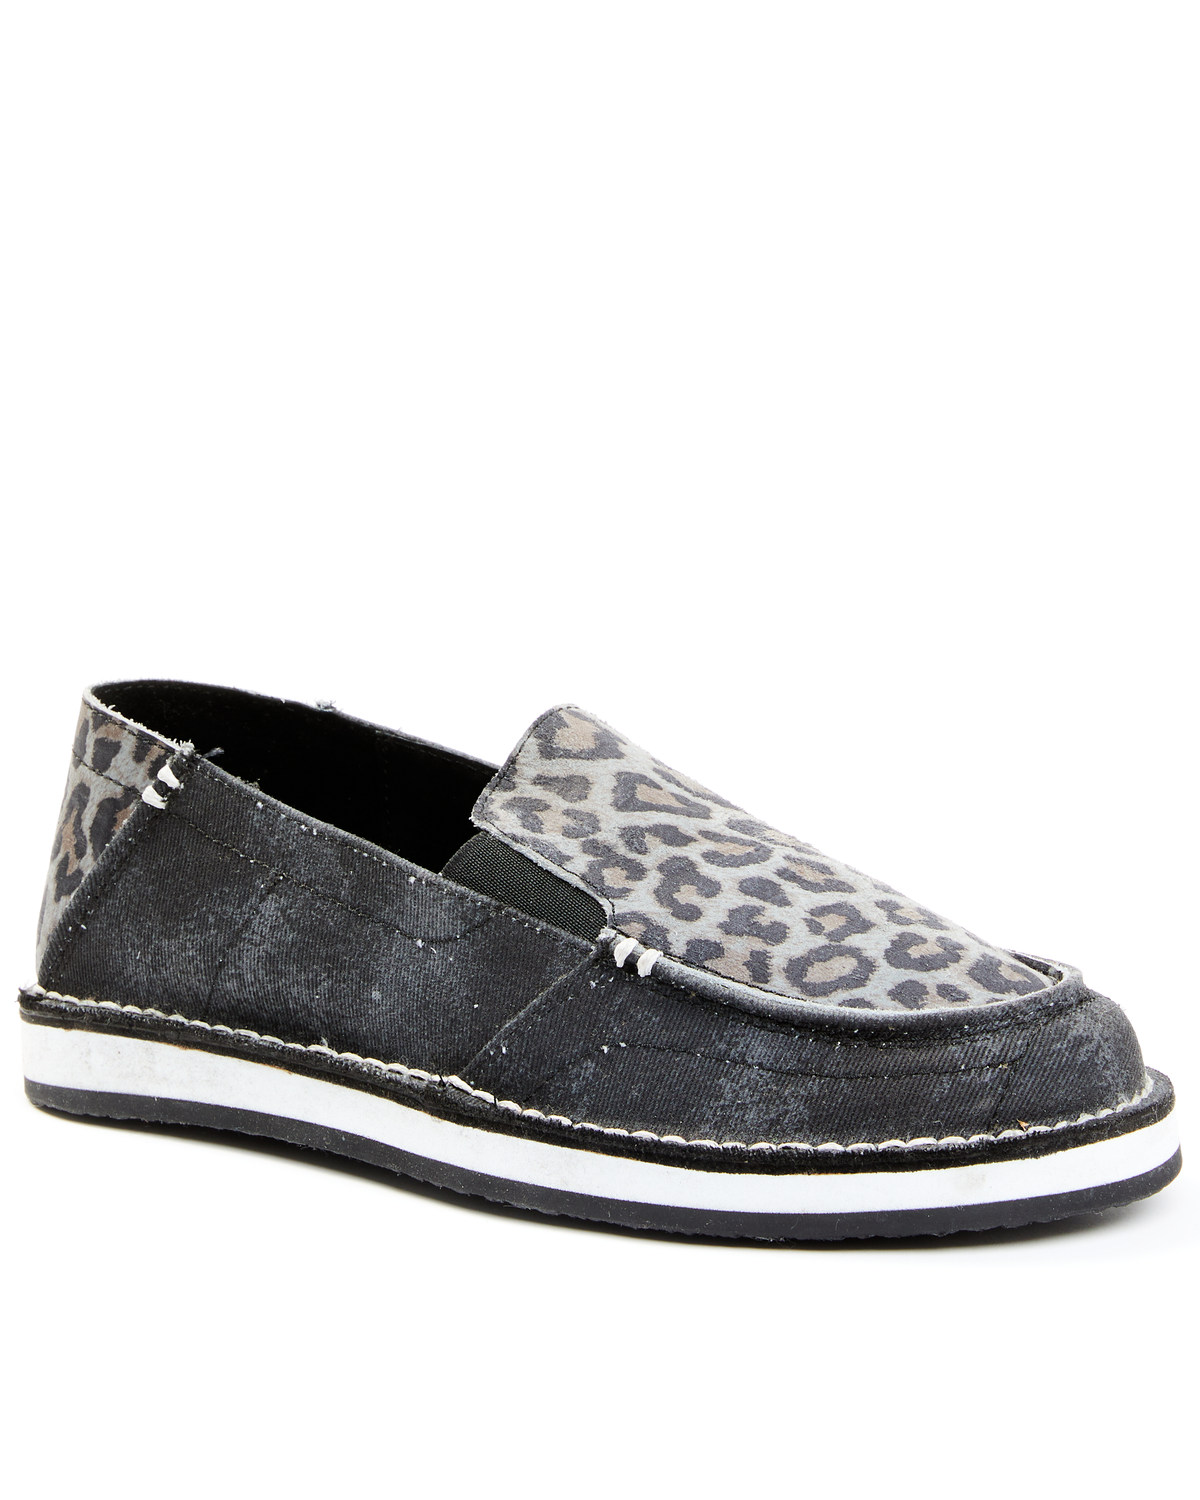 RANK 45® Women's Leopard Casual Slip-On Shoe - Moc Toe